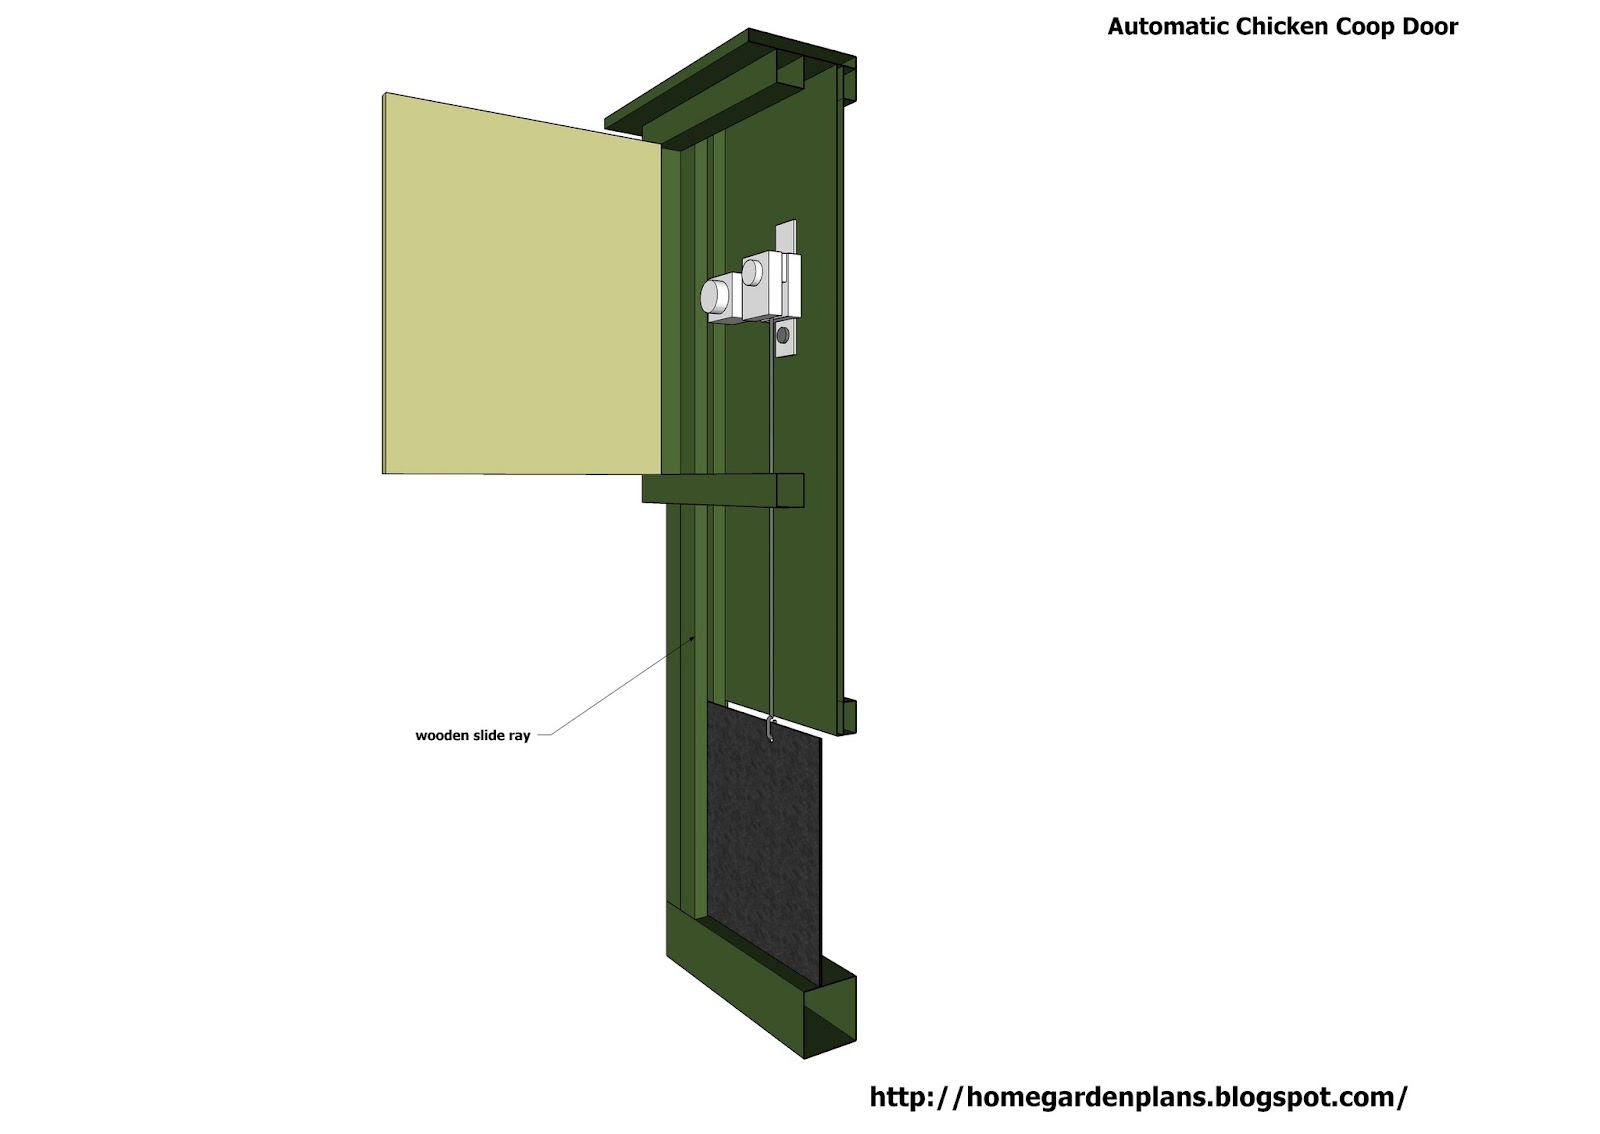 ... garden plans: Automatic Chicken Coop Door - Free Chicken Coop Plans